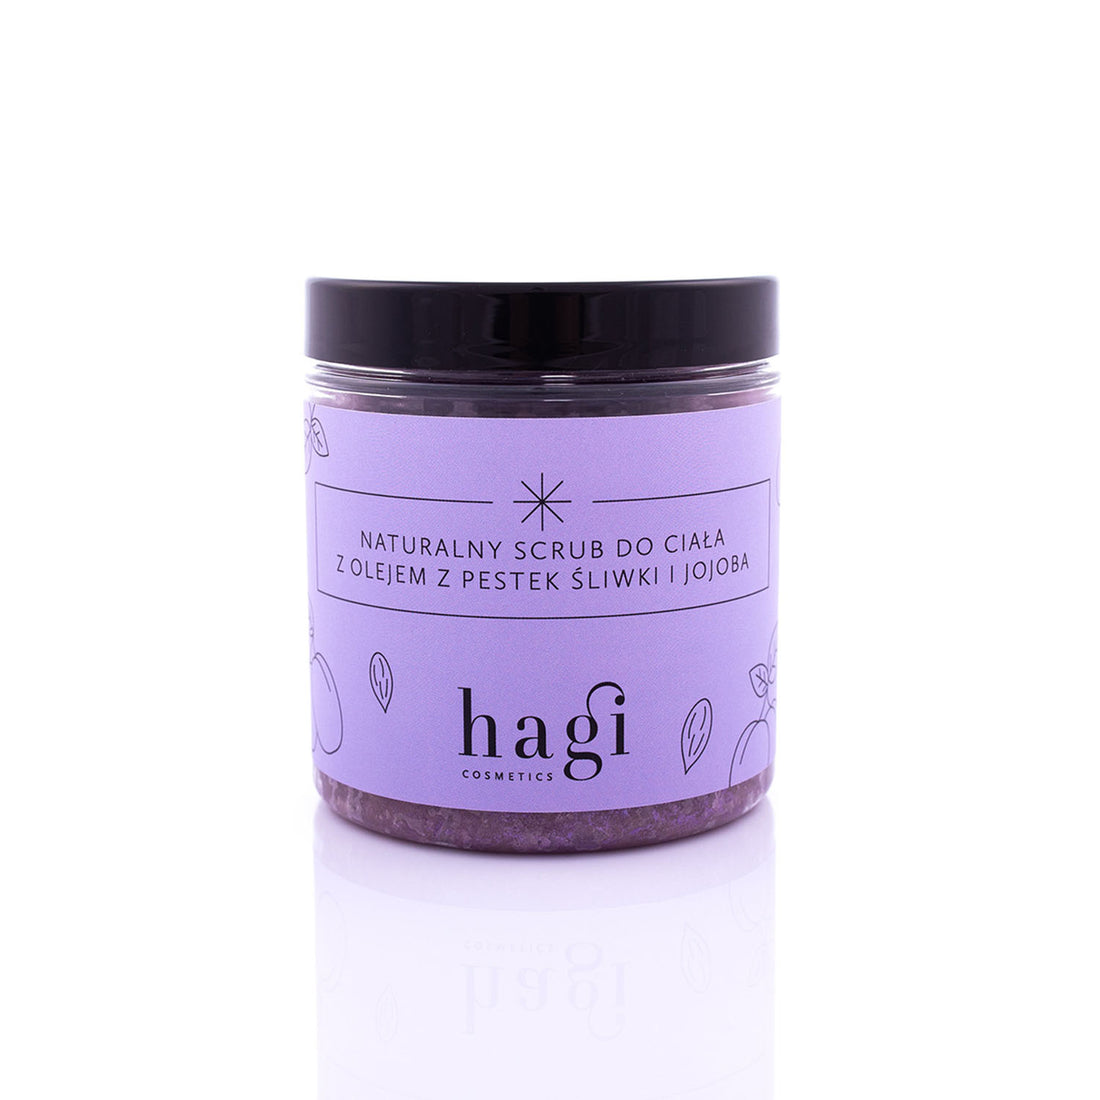 Hagi - 身體潔淨磨砂膏 梅仁油及荷荷芭油